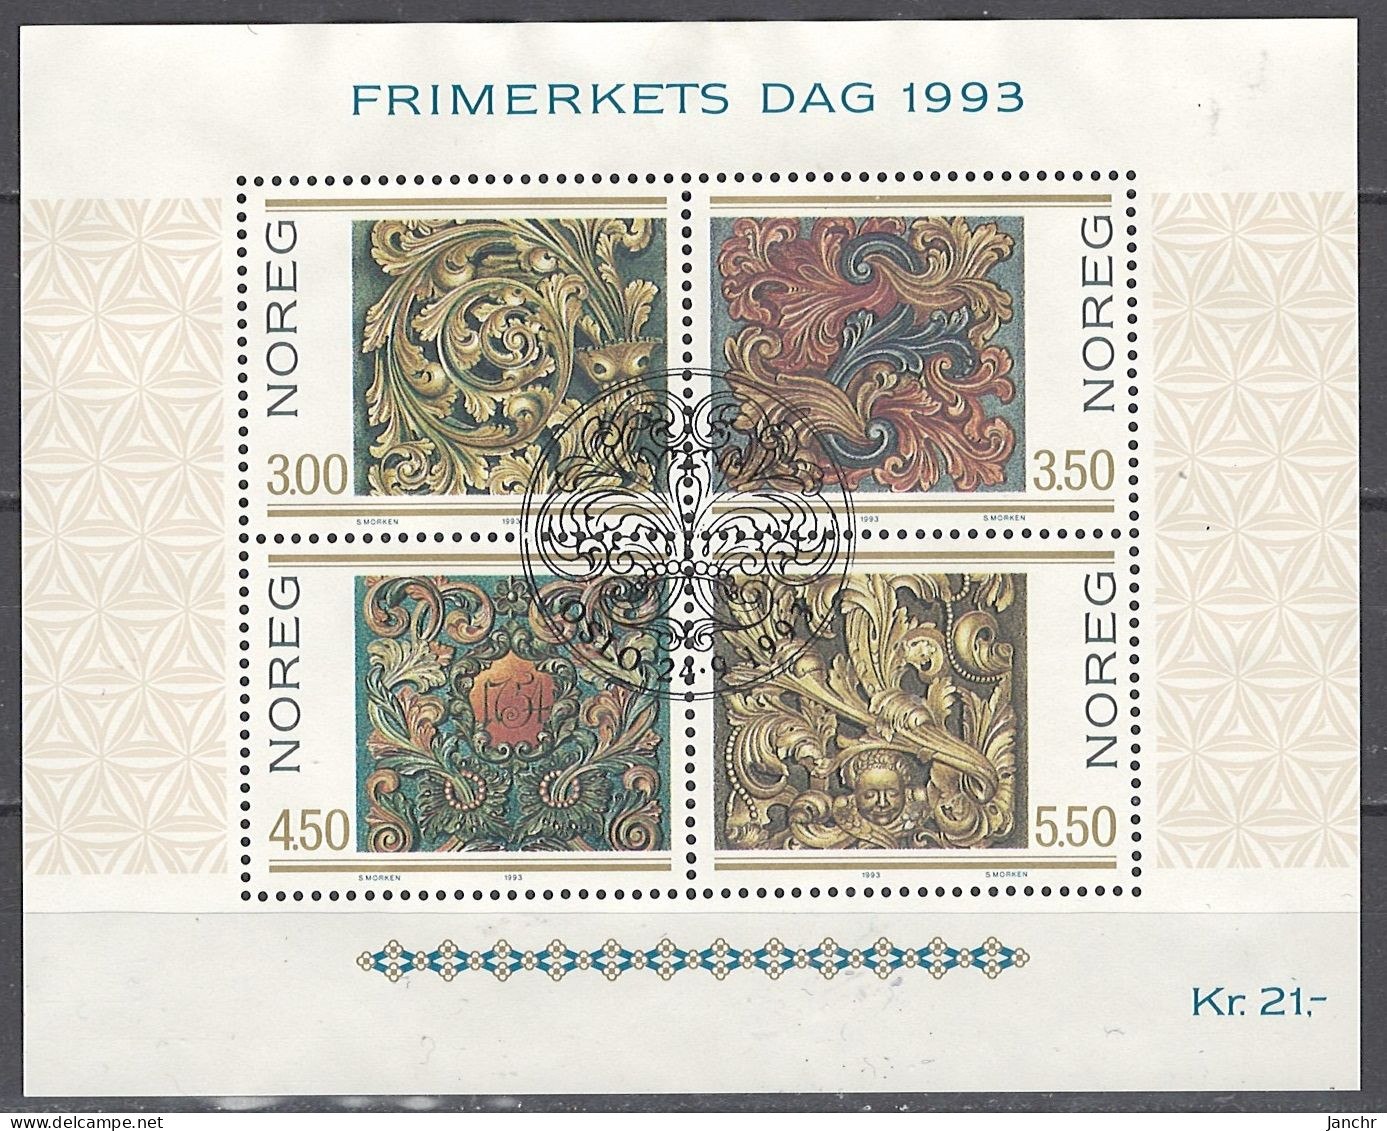 Norwegen Norway 1993. Mi. Block 20, Used O - Blocks & Sheetlets